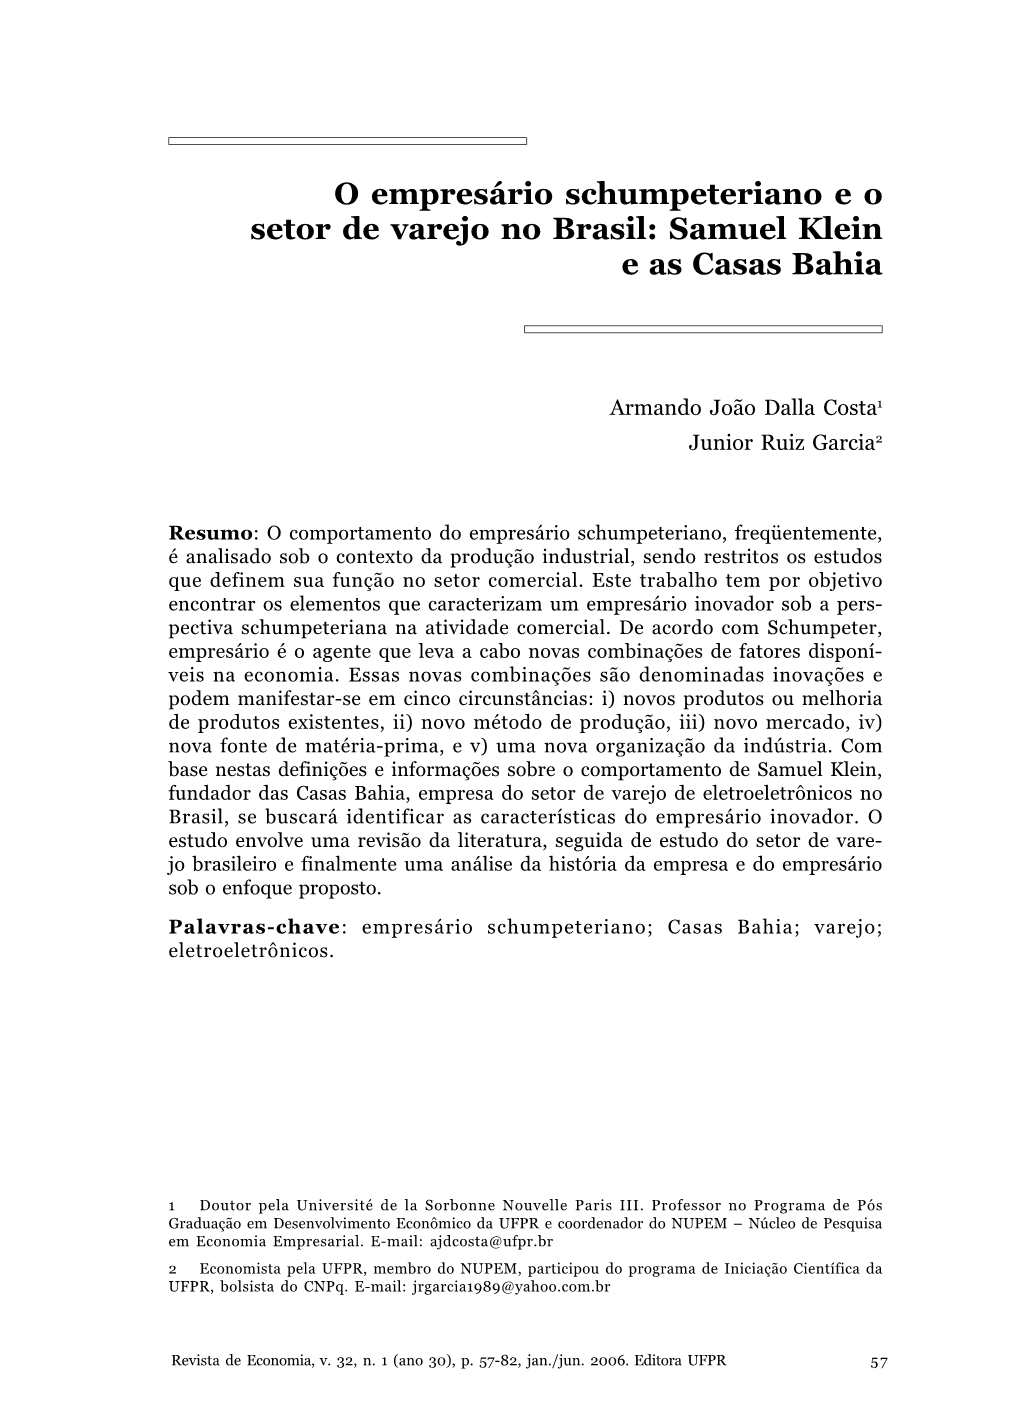 O Empresário Schumpeteriano E O Setor De Varejo No Brasil: Samuel Klein E As Casas Bahia